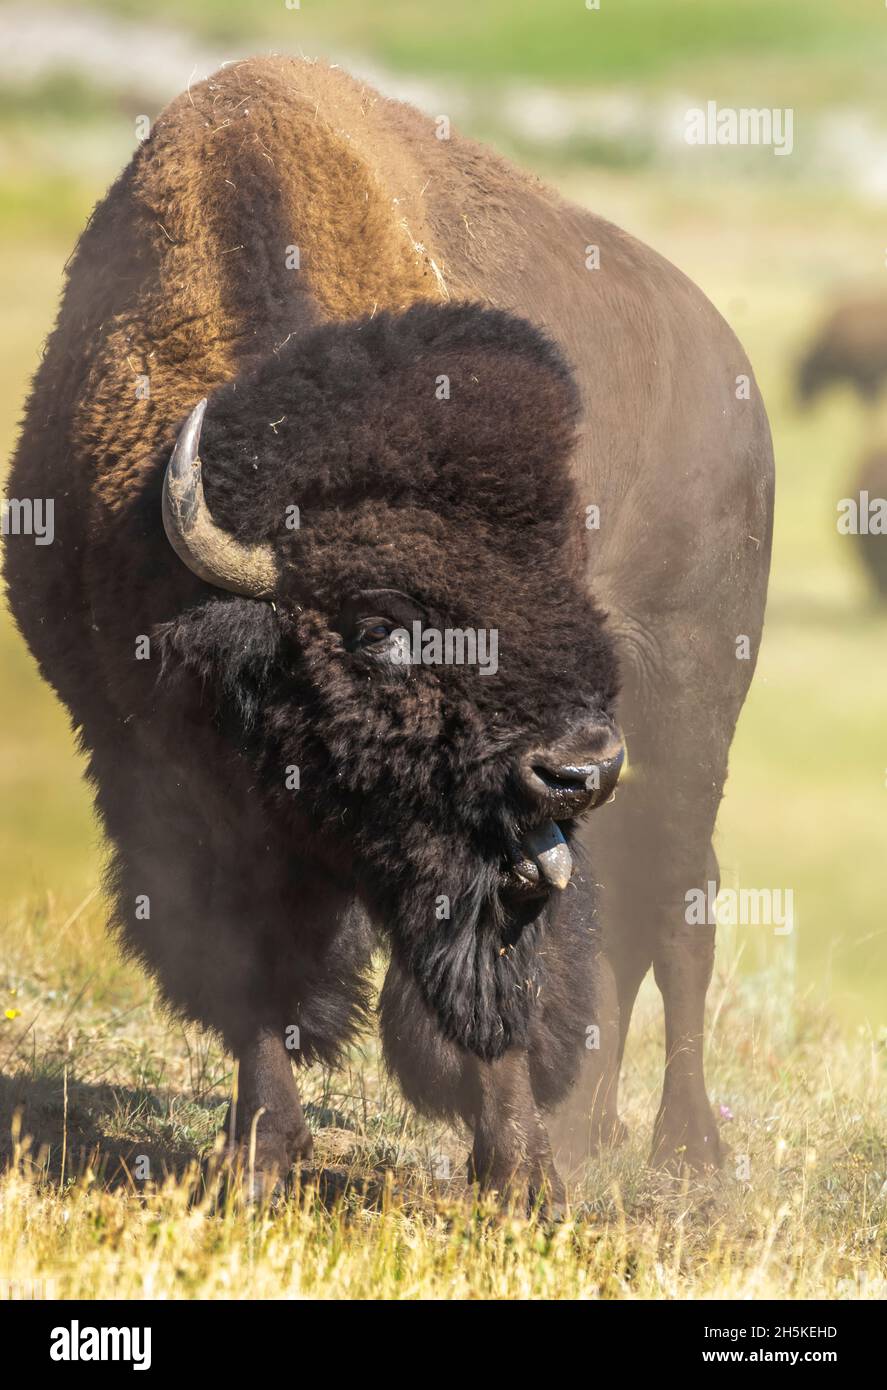 Portrait d'un bison (Bison bison) debout dans un champ dont la langue dépasse; Parc national de Yellowstone, États-Unis d'Amérique Banque D'Images